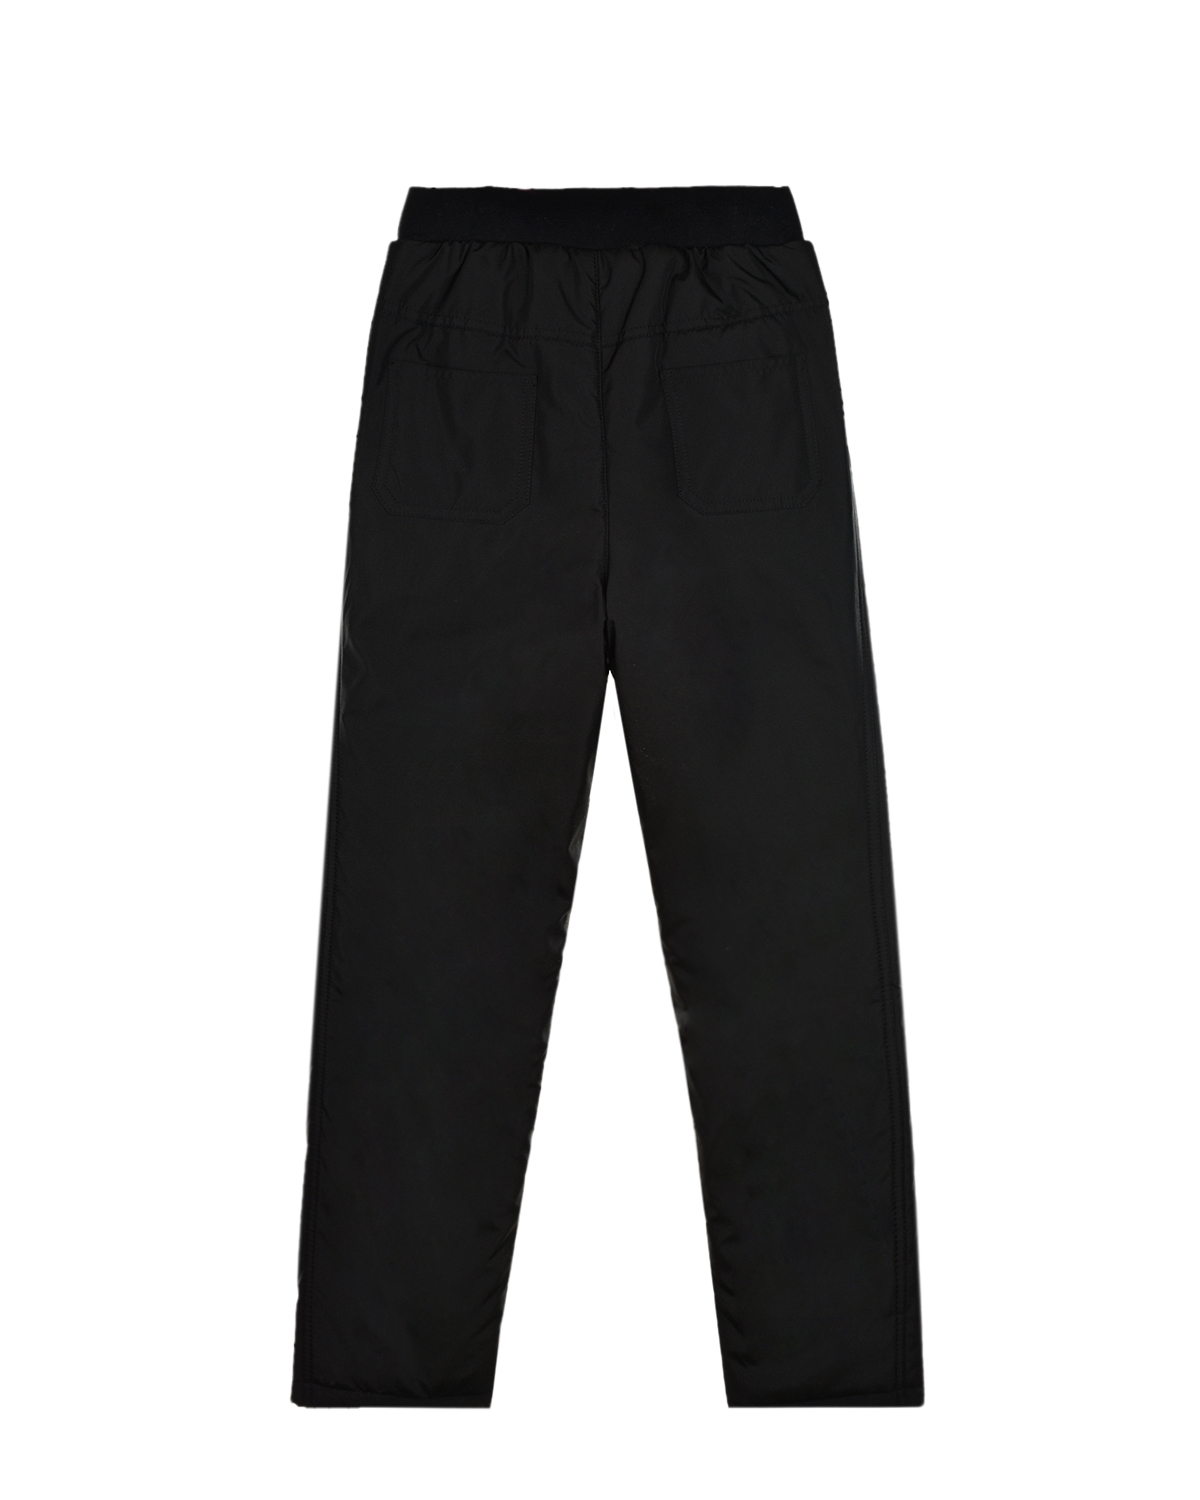 Черные утепленные брюки Dan Maralex детские, размер 140, цвет нет цвета - фото 2